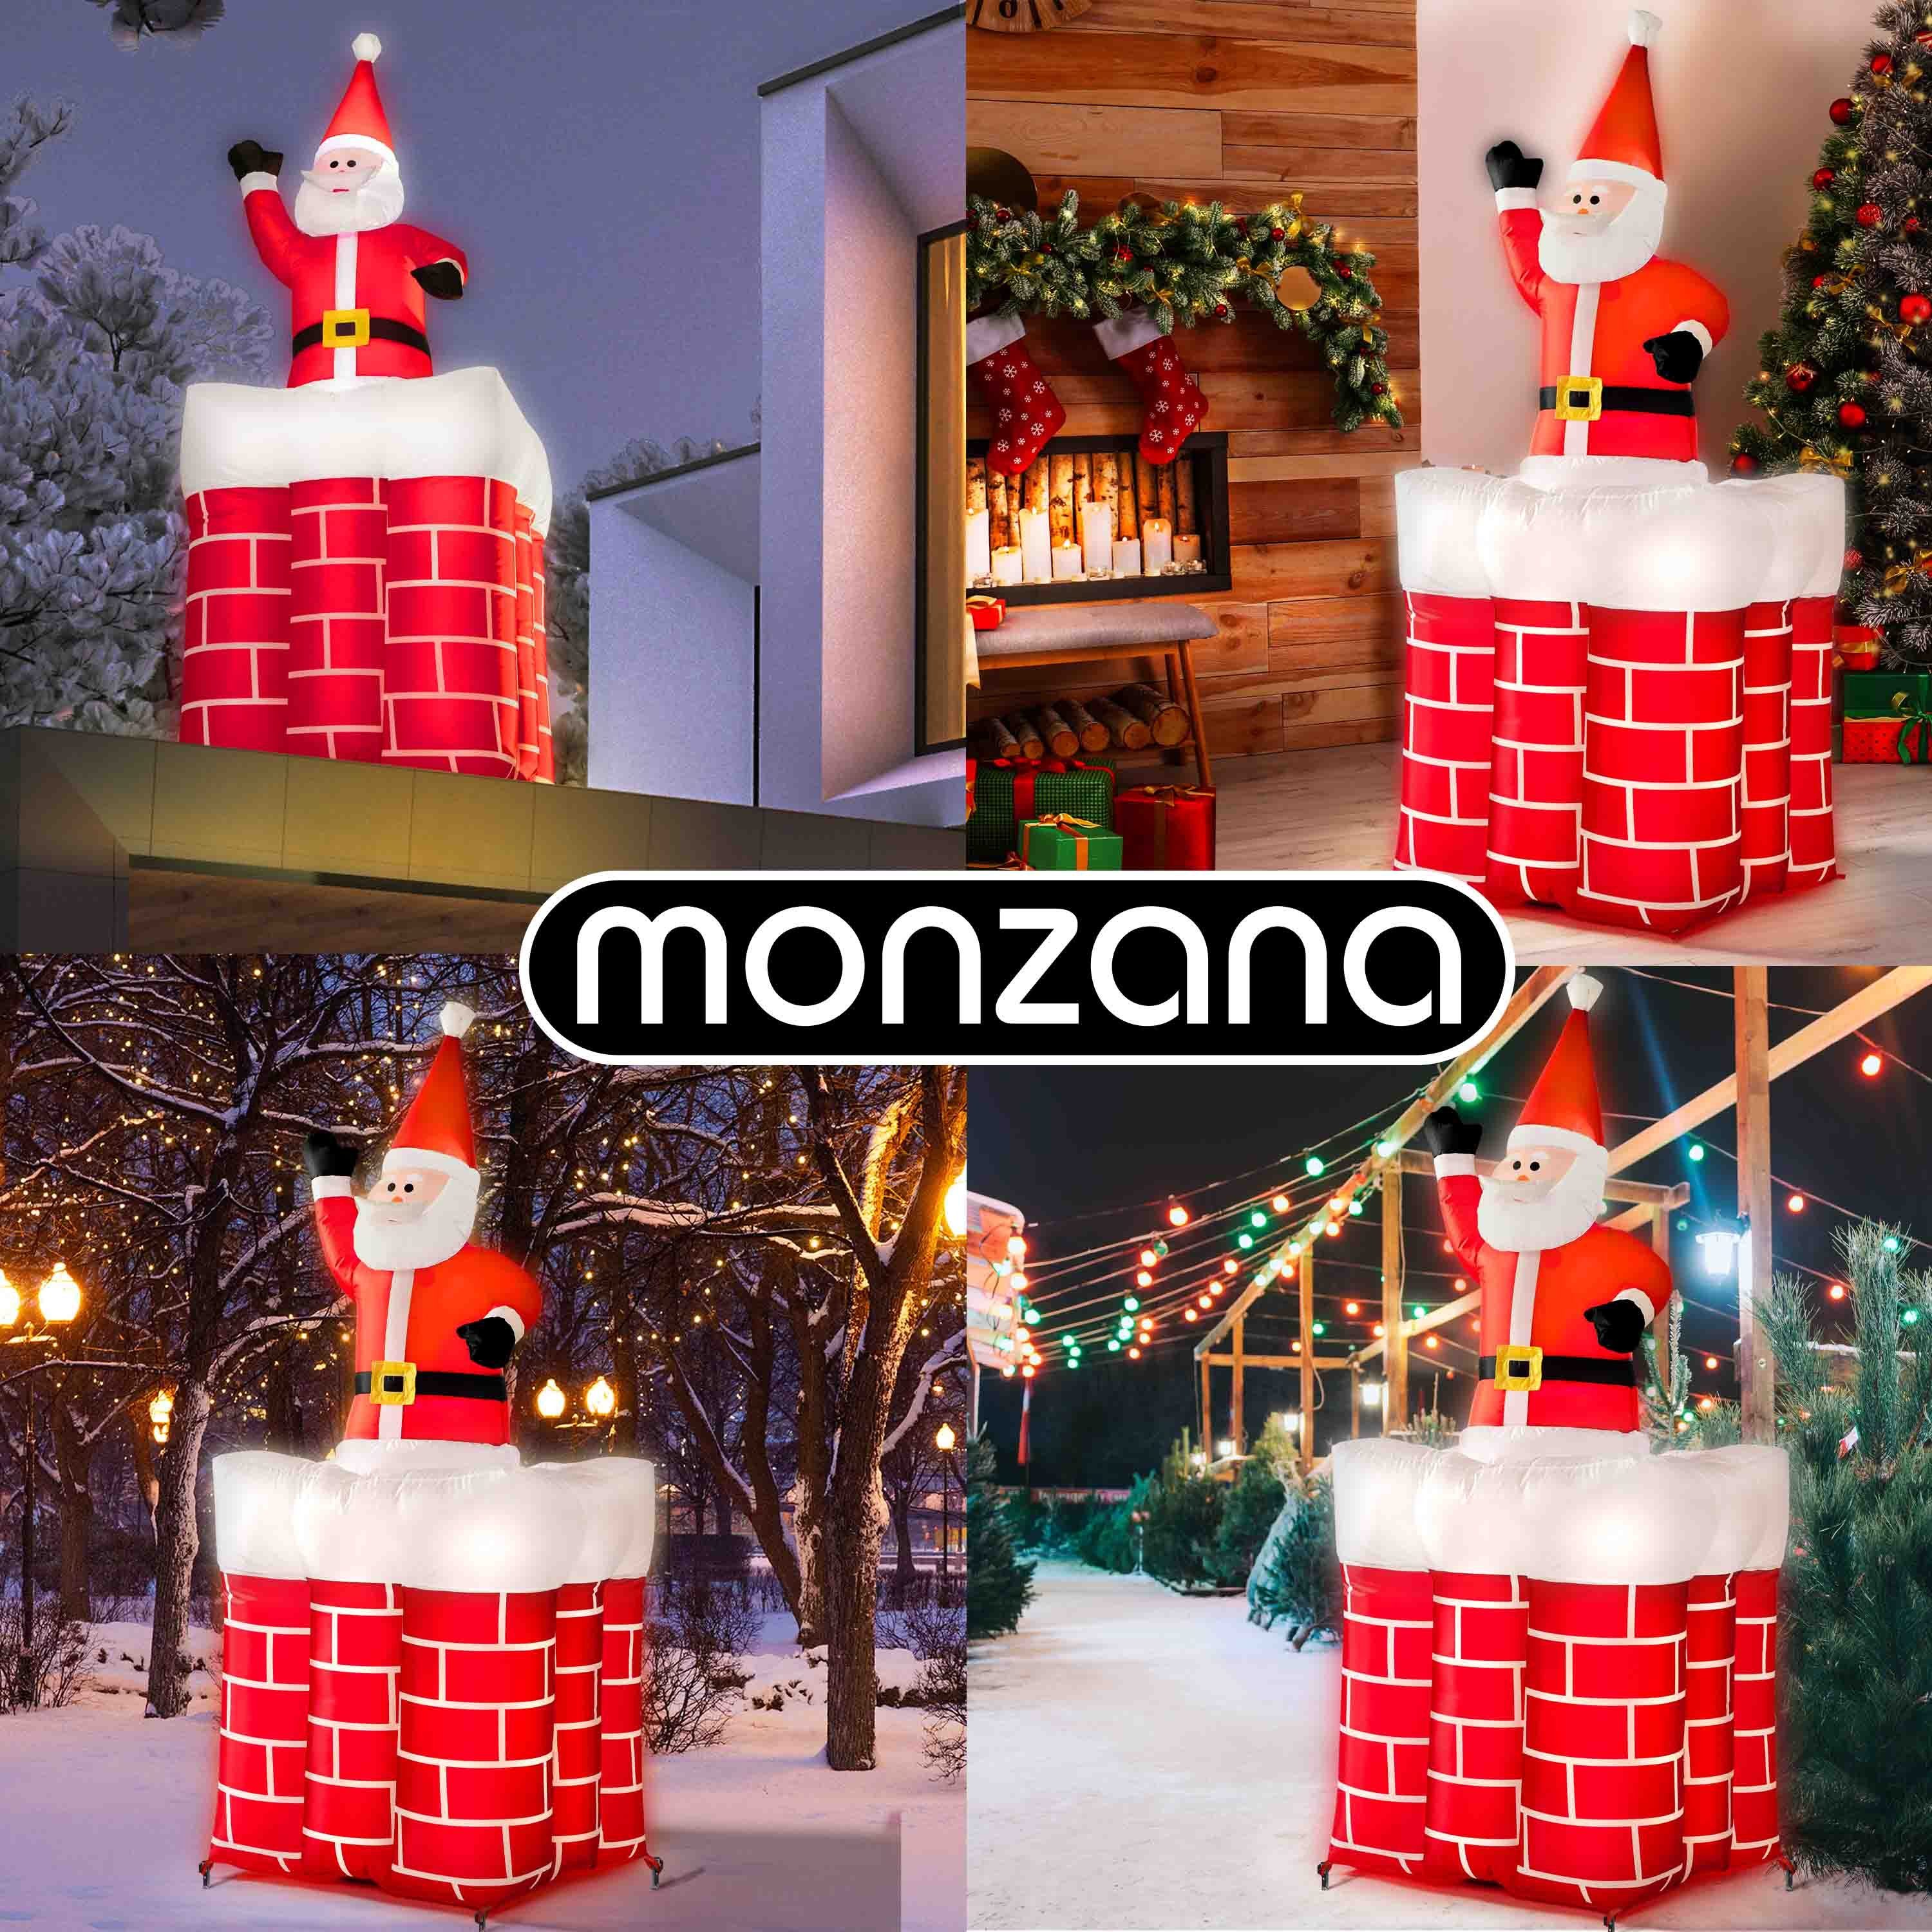 LED monzana groß 178cm Weihnachtsmann, Beleuchtet springt-aus-dem-Schornstein Aufblasbarer